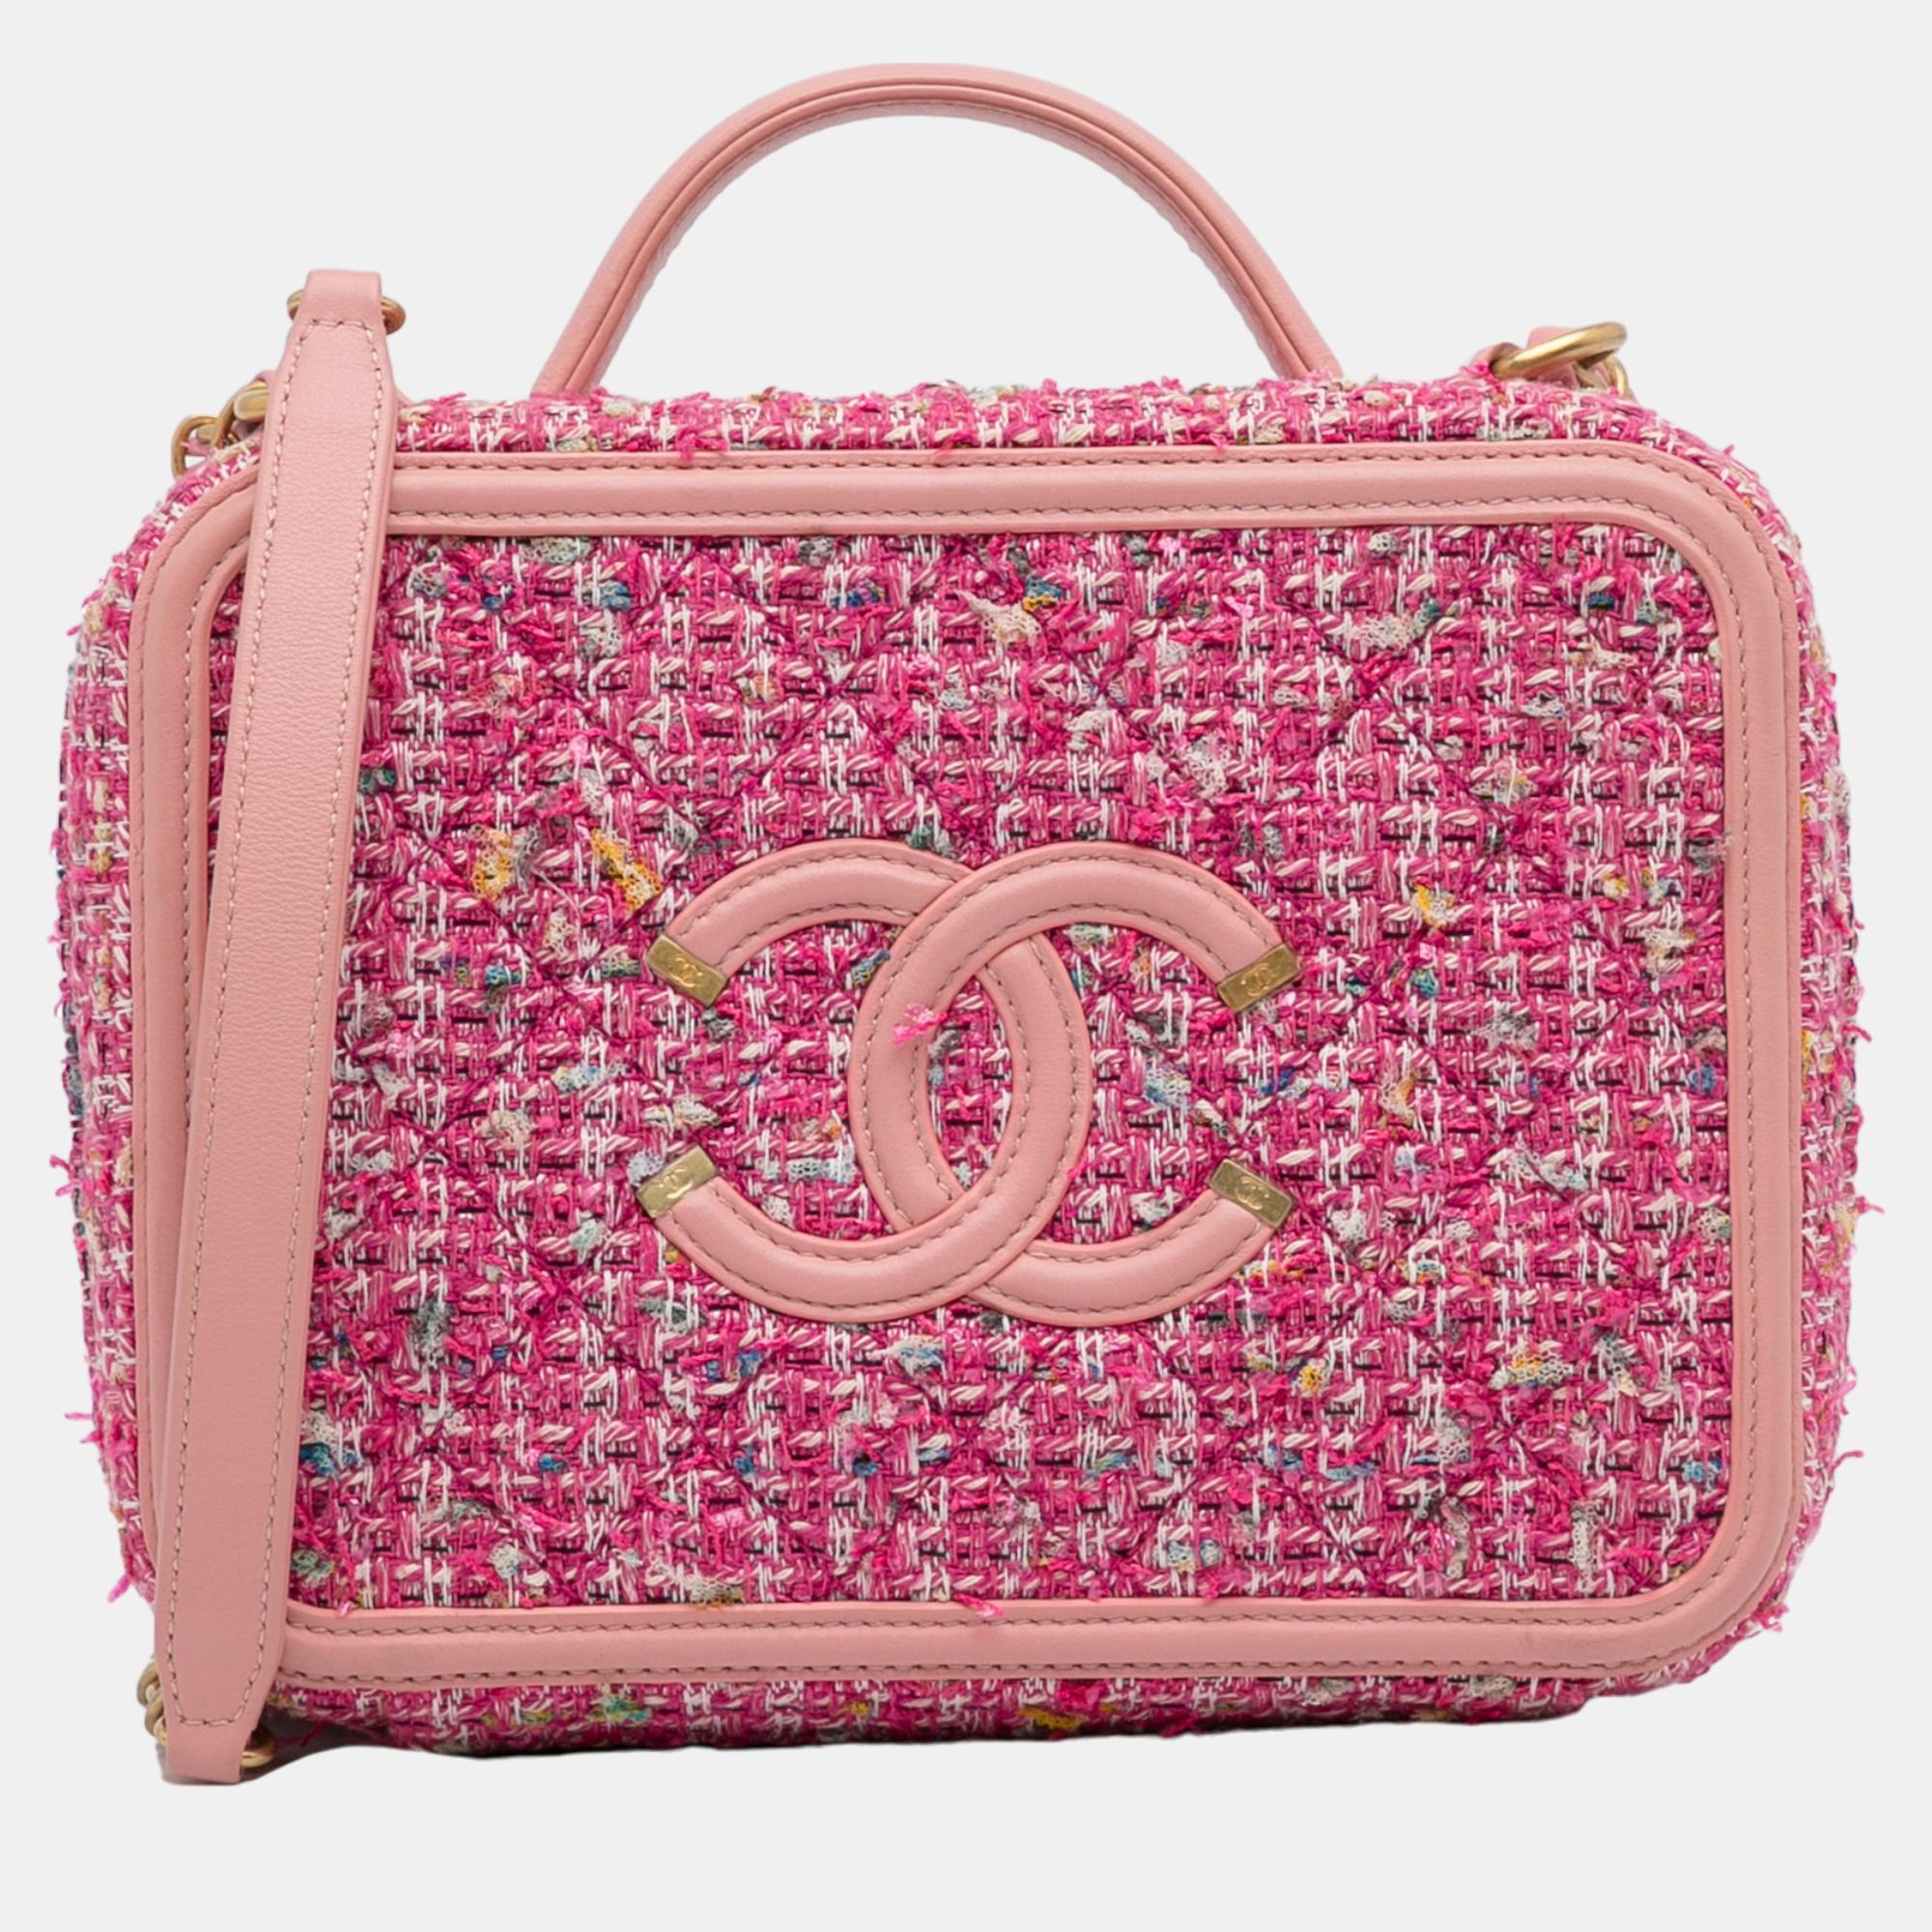 Chanel pink medium tweed filigree vanity bag